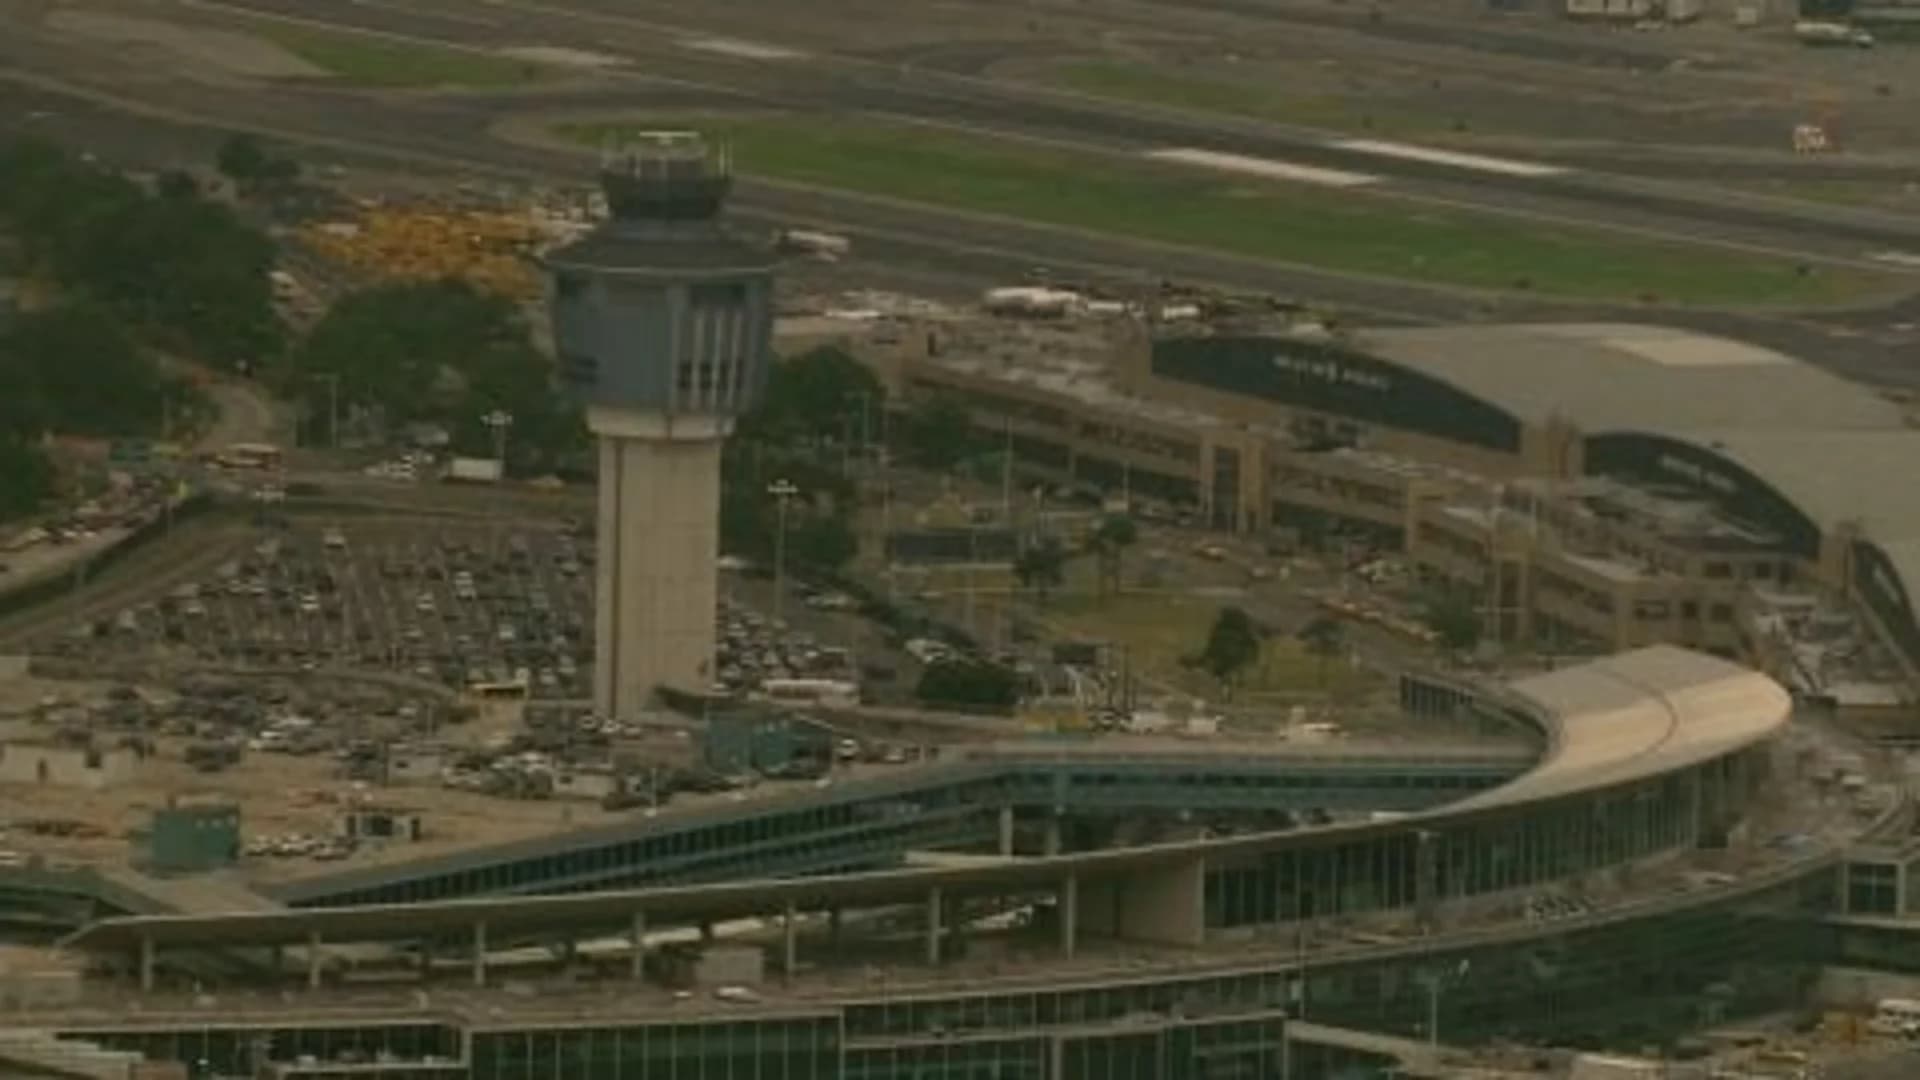 30 hurt when flight to JFK hits 'severe turbulence'